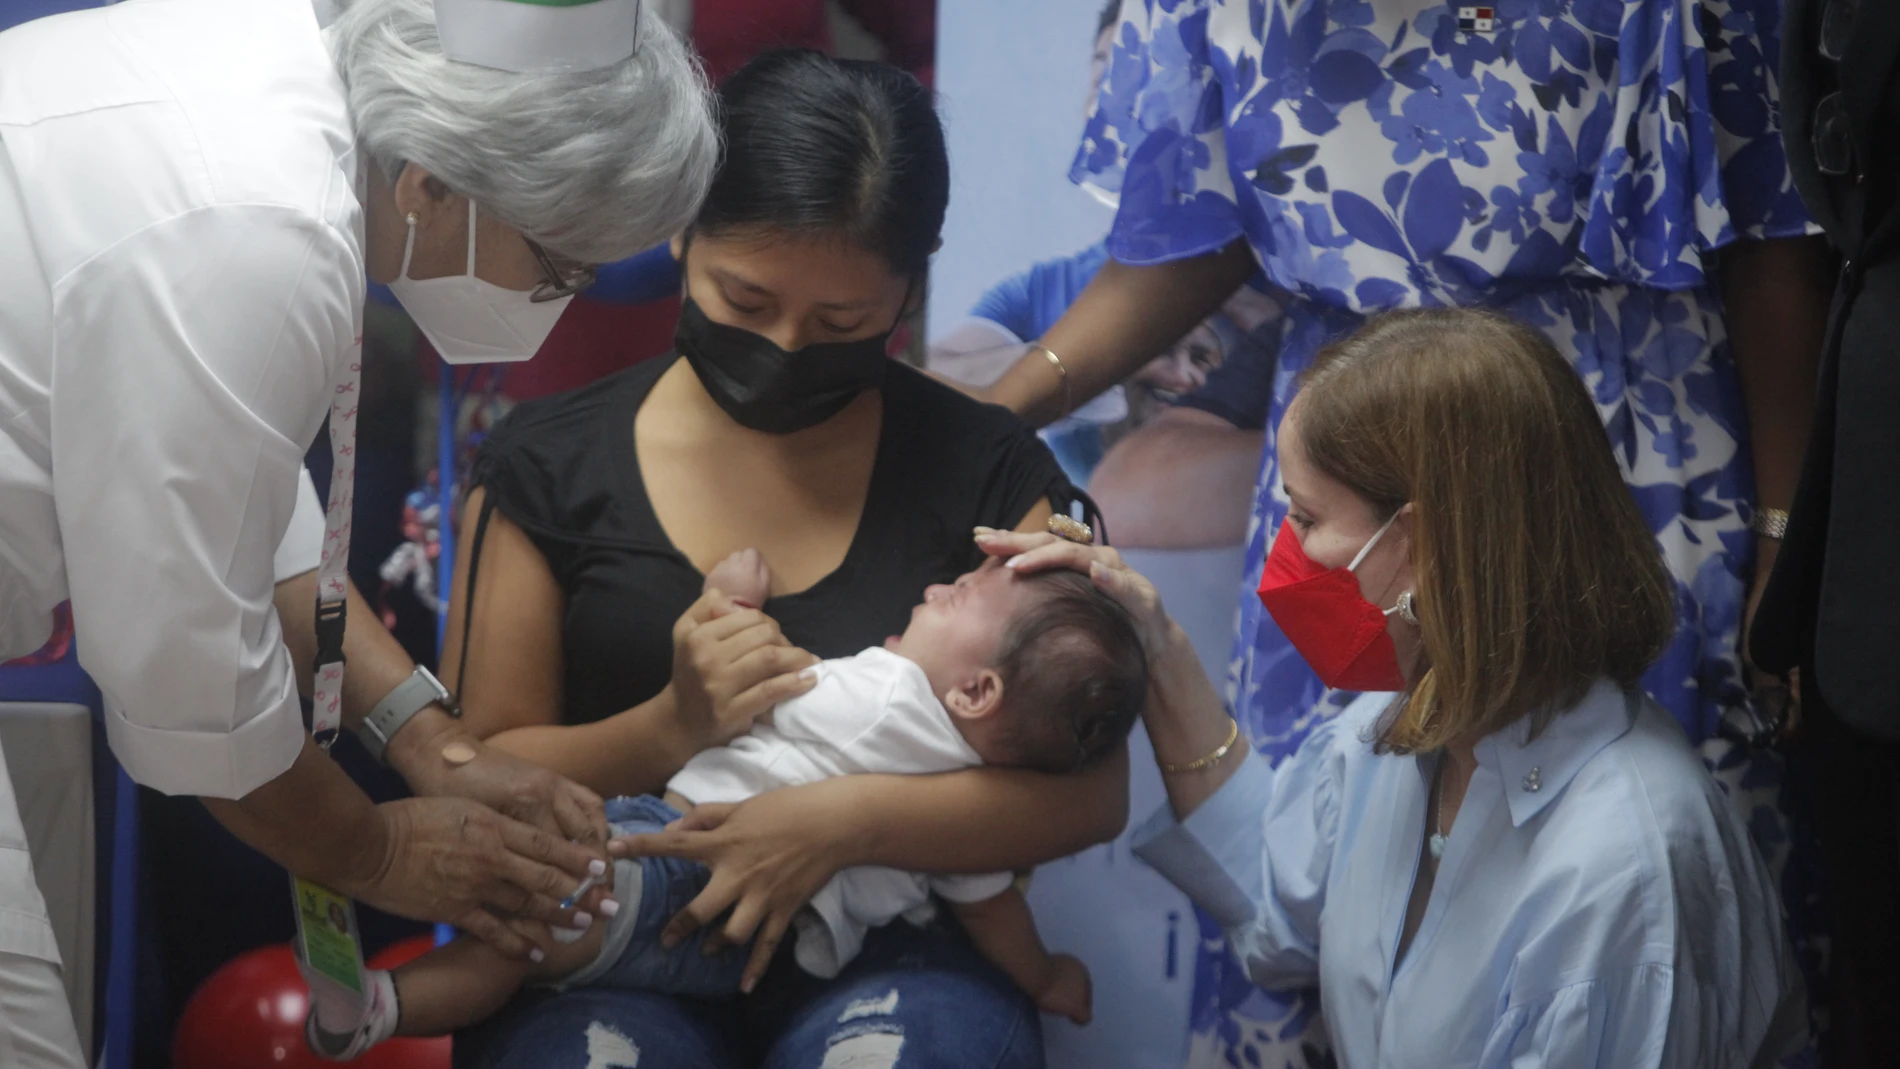 Niños reciben una vacuna contra la Covid-19 en Ciudad de Panamá (Panamá). Las autoridades sanitarias de Panamá comenzaron la vacunación contra la covid-19 a menores entre seis meses y cuatro años de edad el pasado día 10